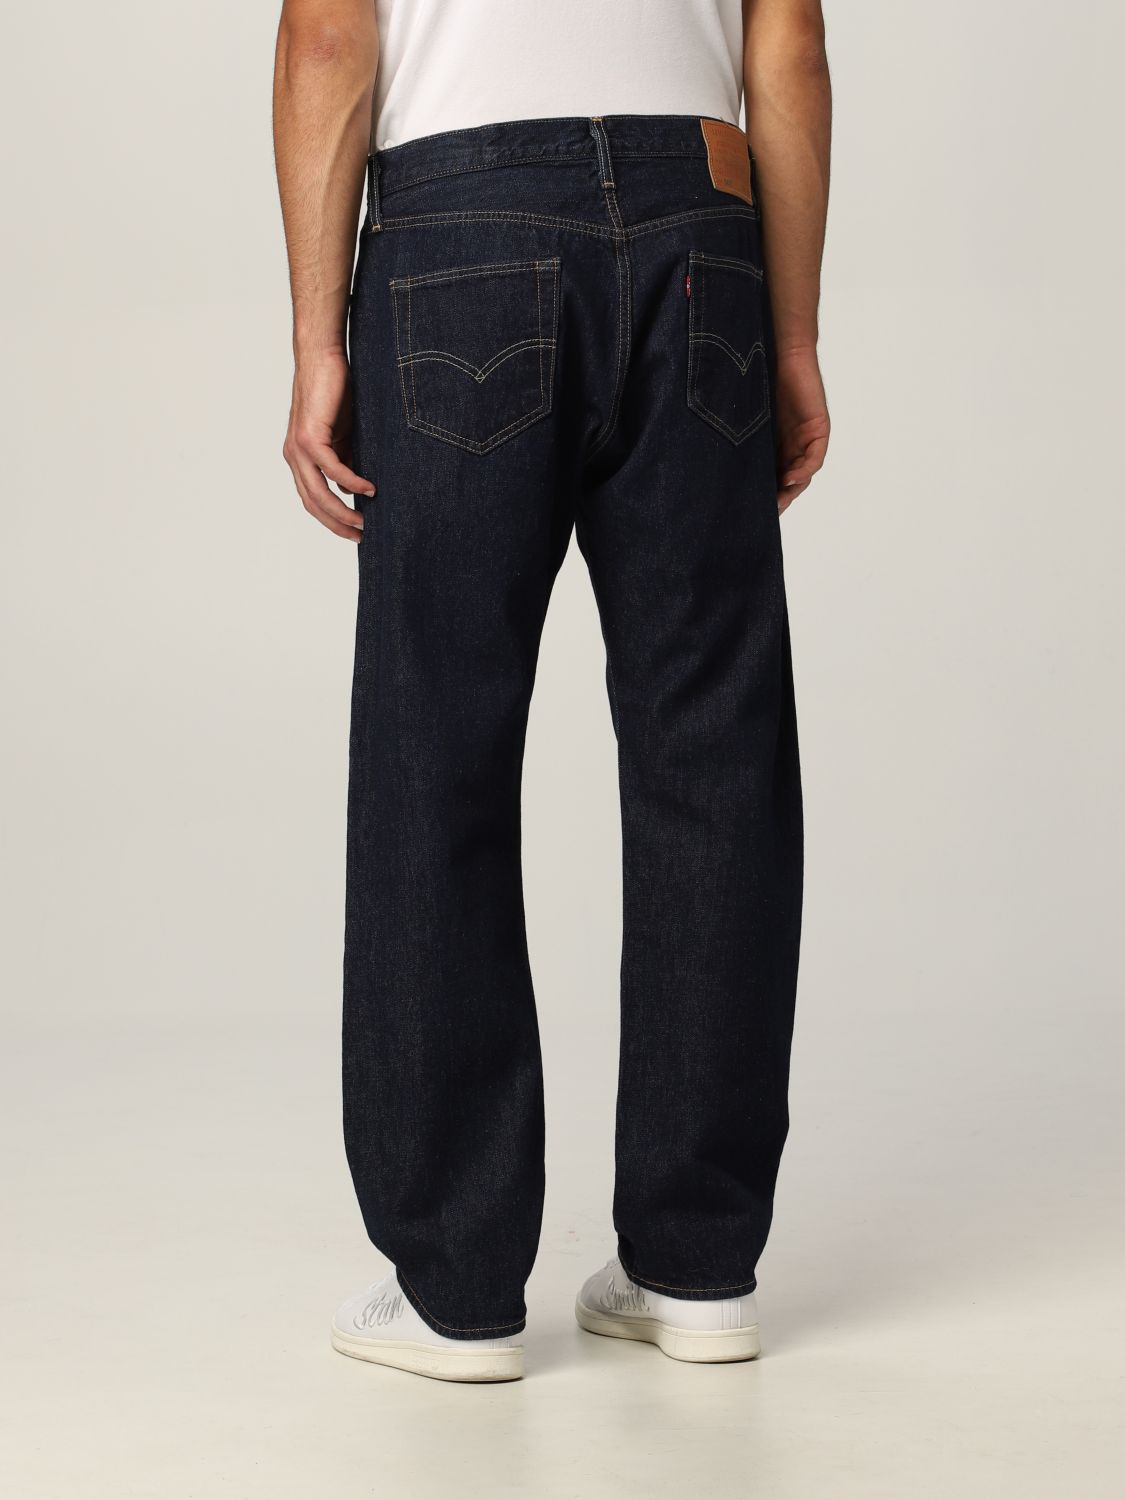 LEVI'S: Jeans para hombre, Denim | Jeans Levi's 005010101 línea en GIGLIO.COM